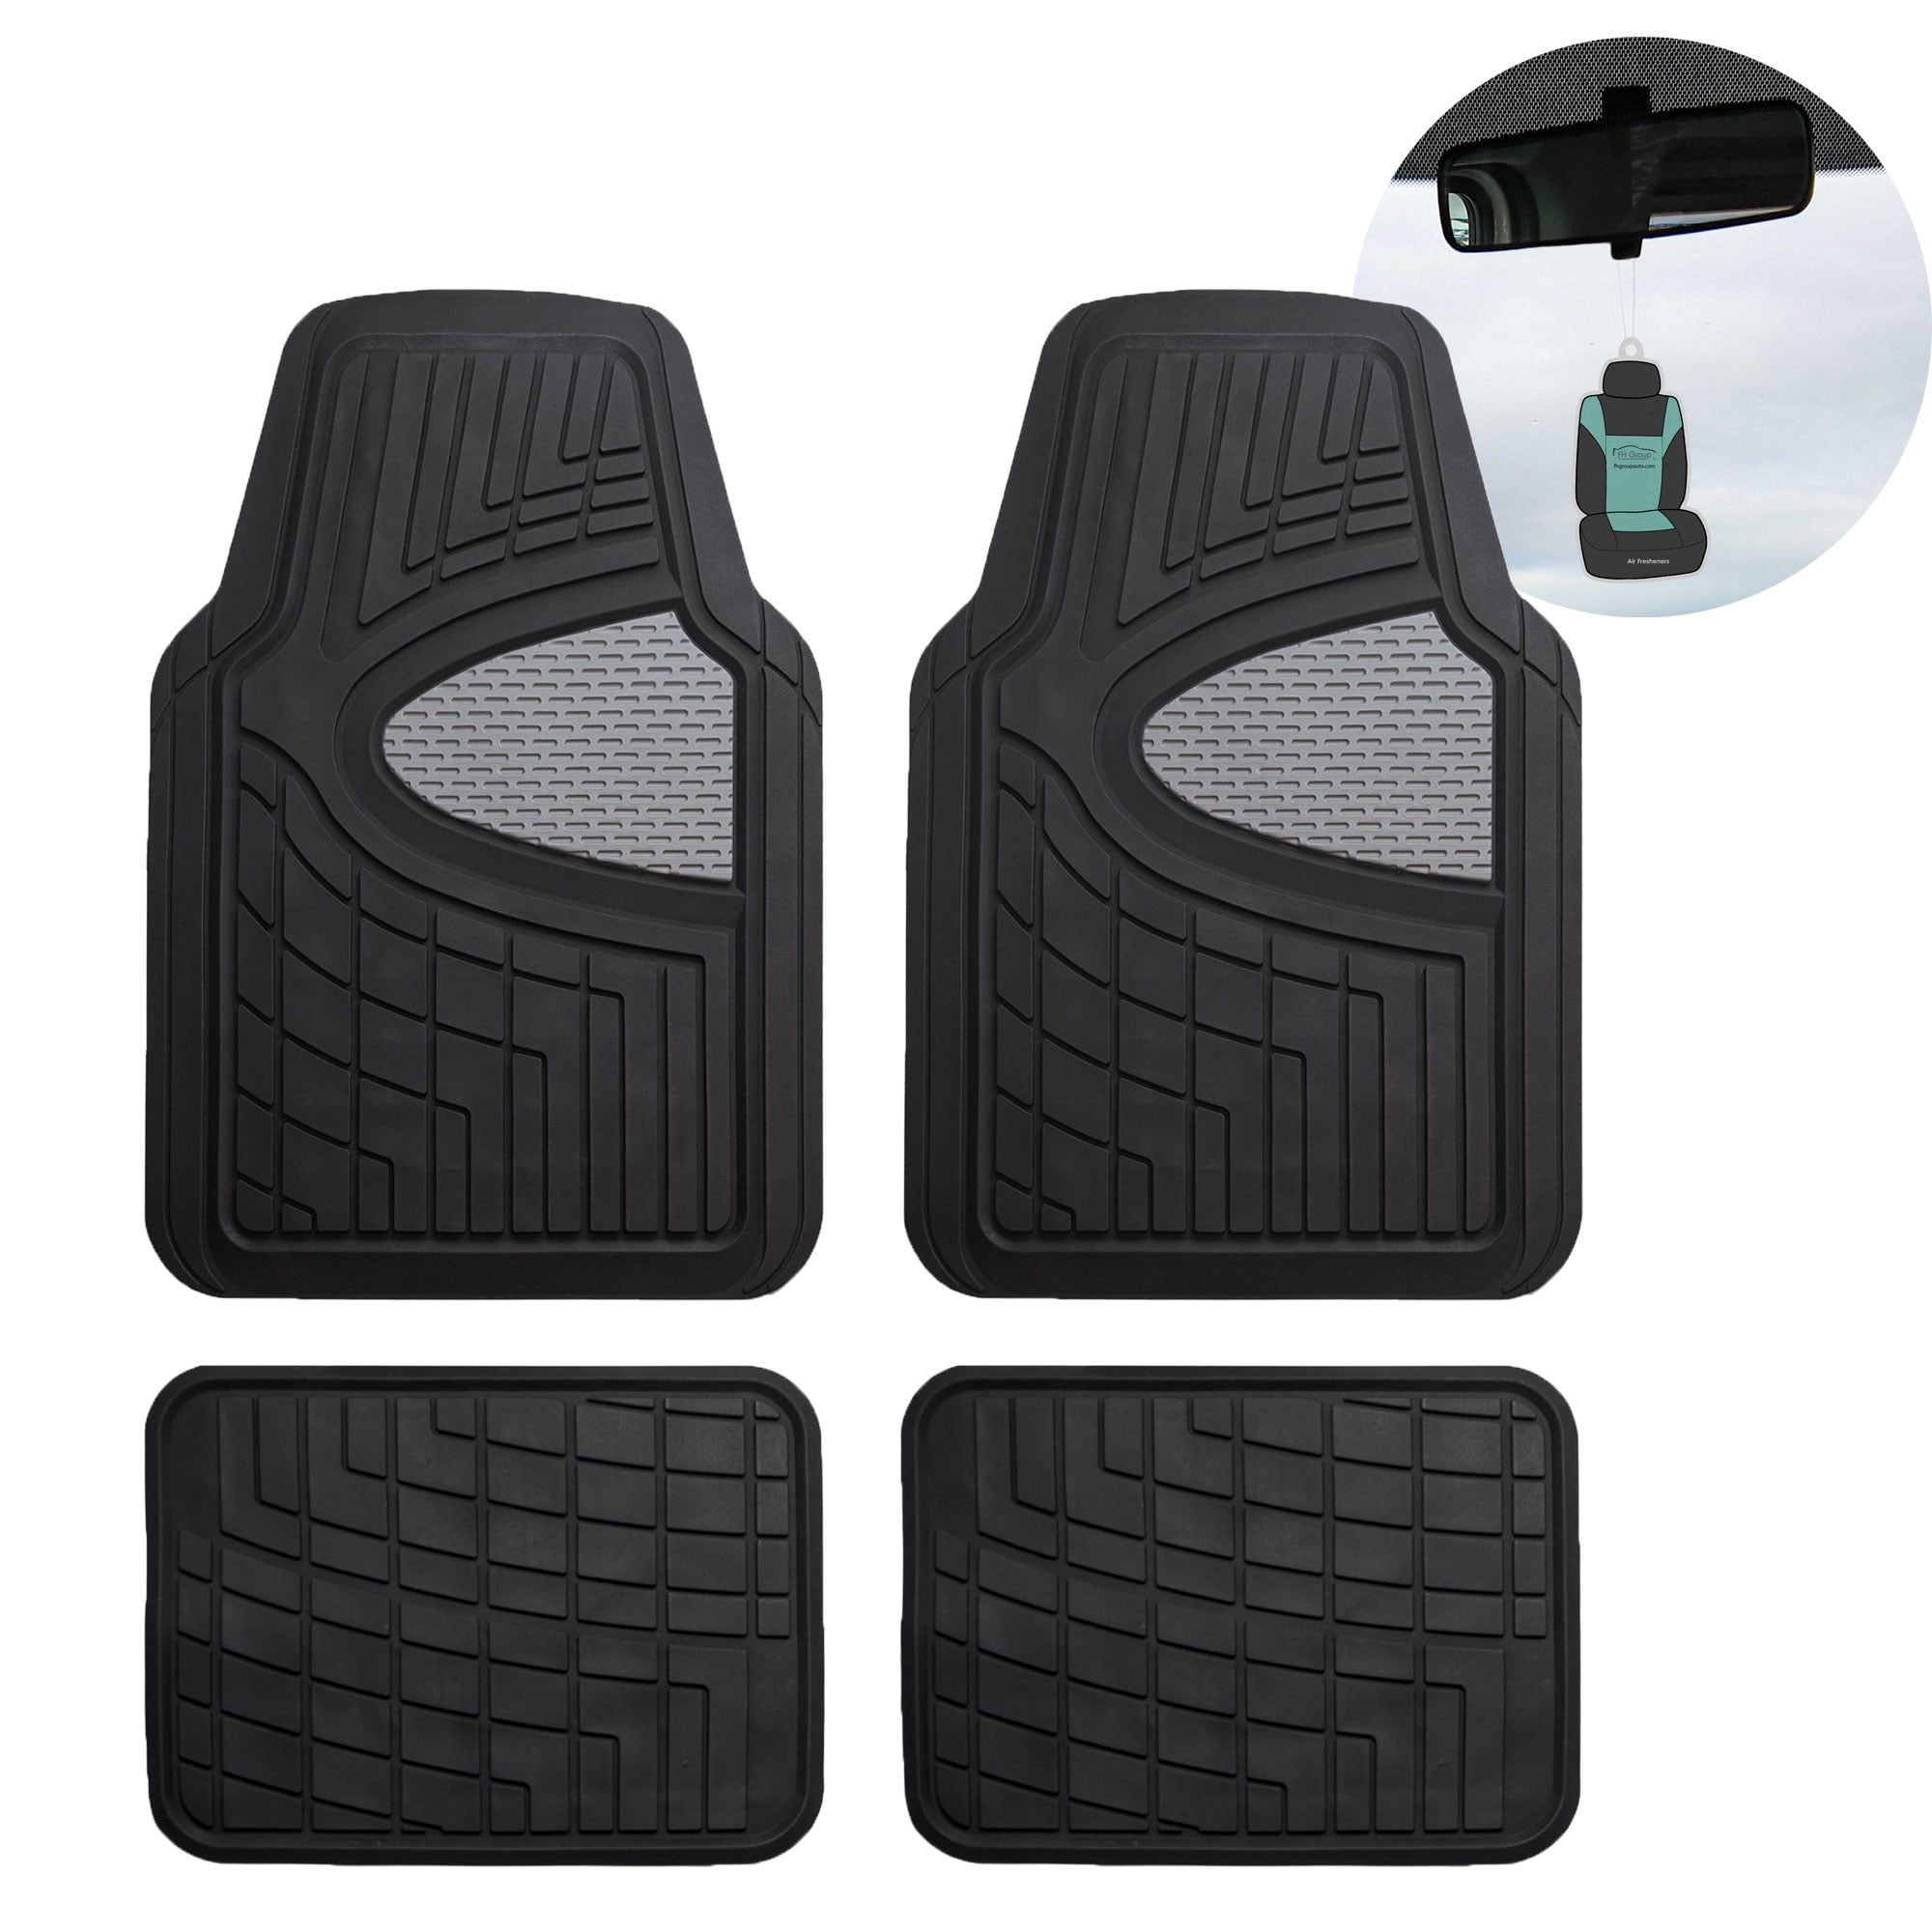 universal classic type car floor rubber mat waterproof for interor